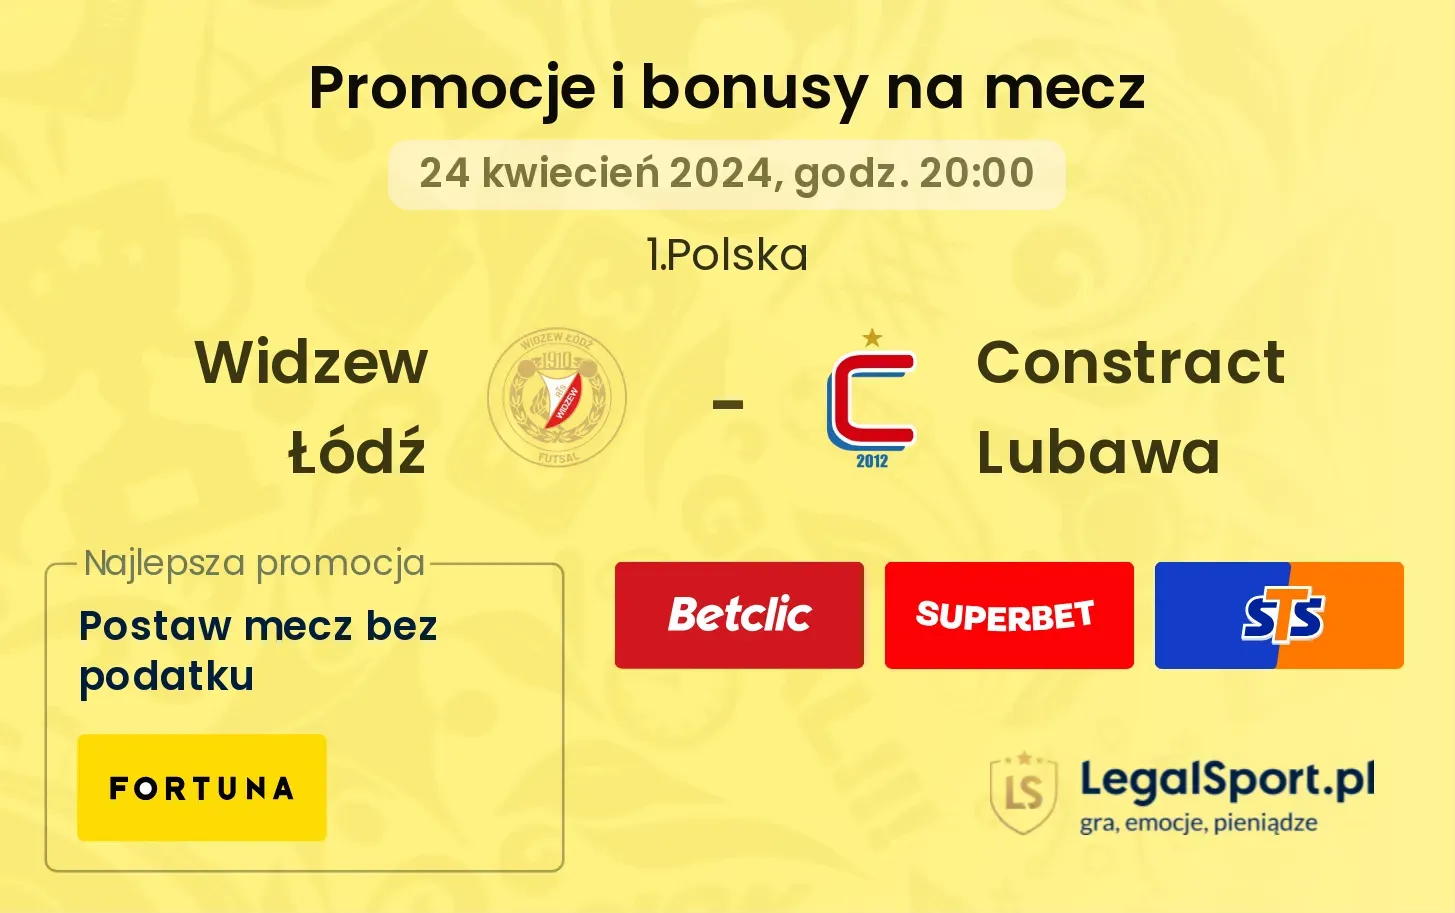 Widzew Łódź - Constract Lubawa promocje bonusy na mecz